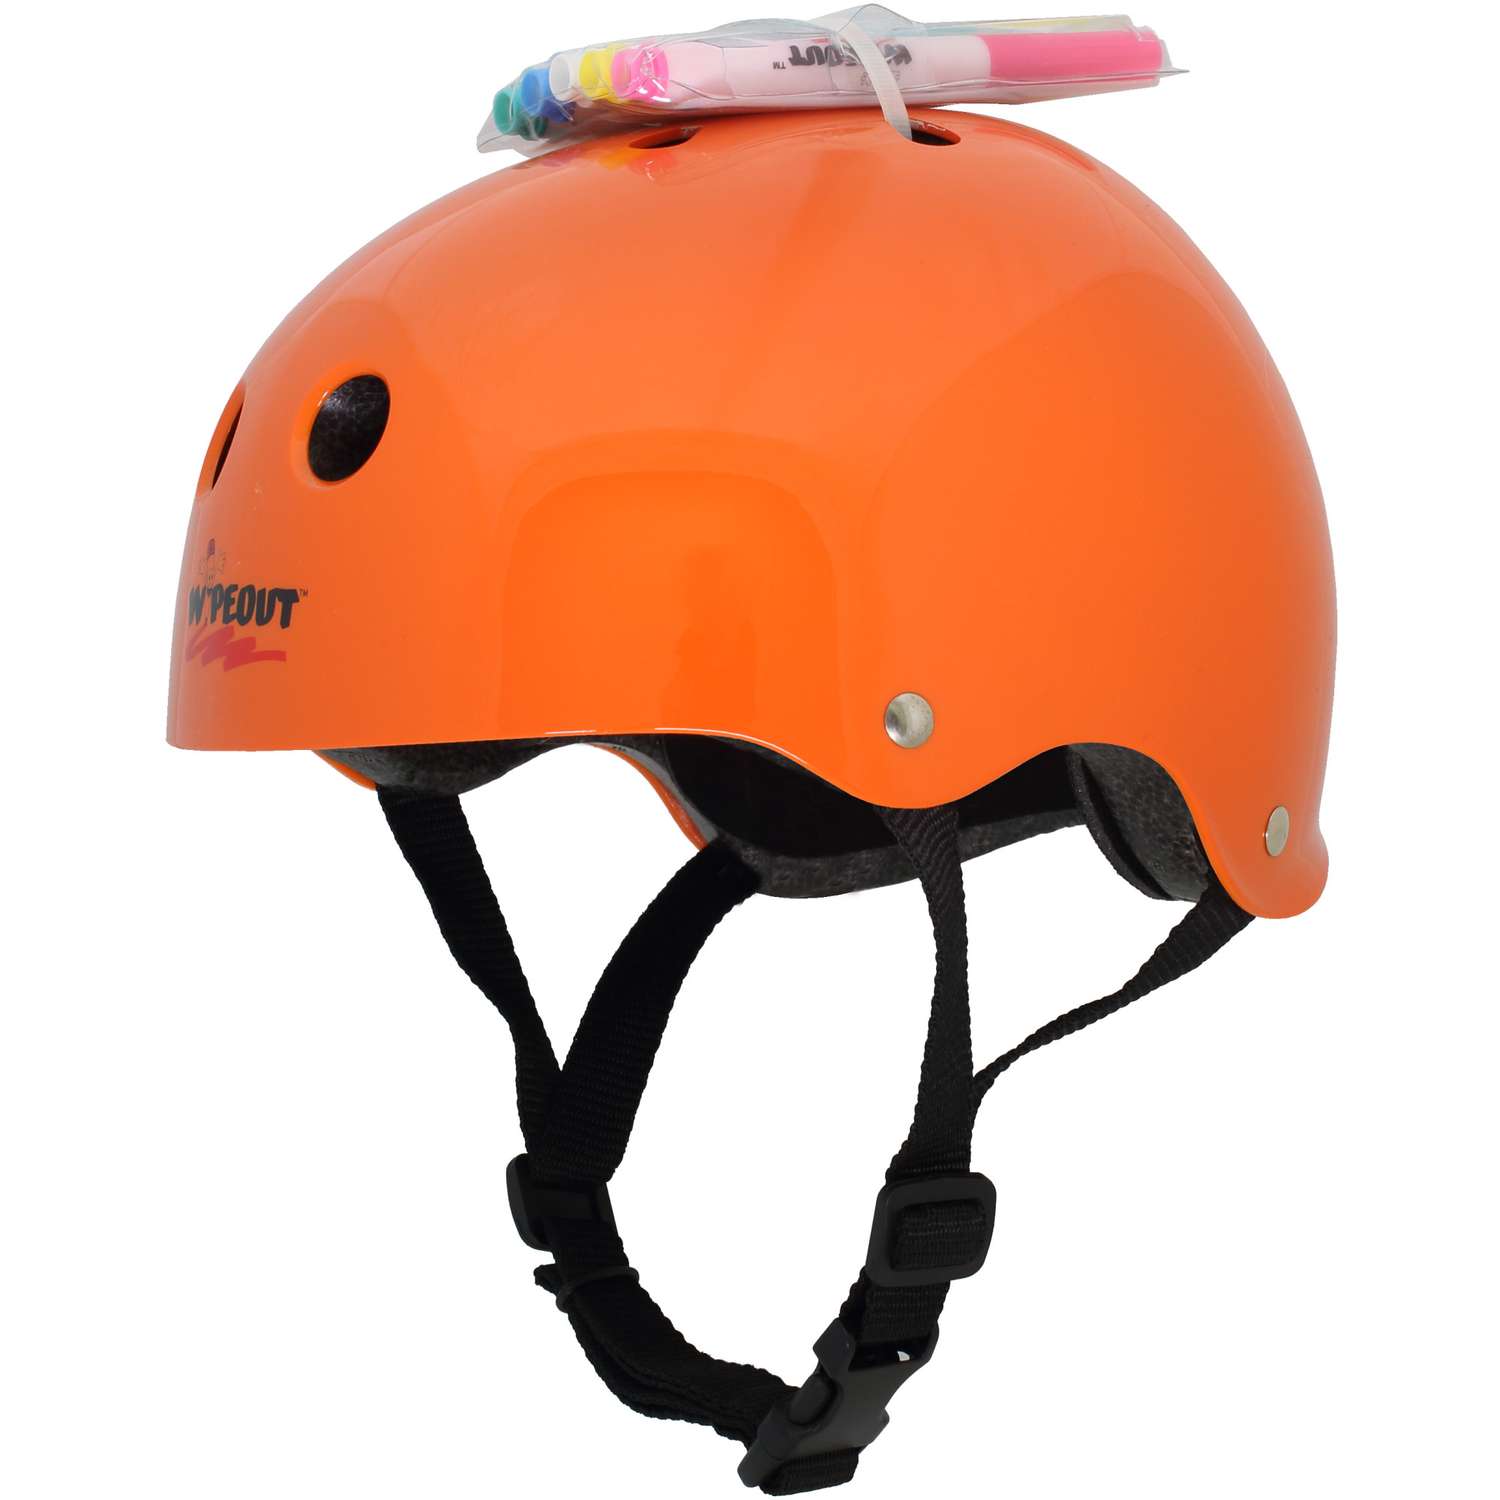 Шлем защитный спортивный WIPEOUT Neon Tangerine (оранжевый) с фломастерами и трафаретами / размер M 5+ / обхват 49-52 см. - фото 1